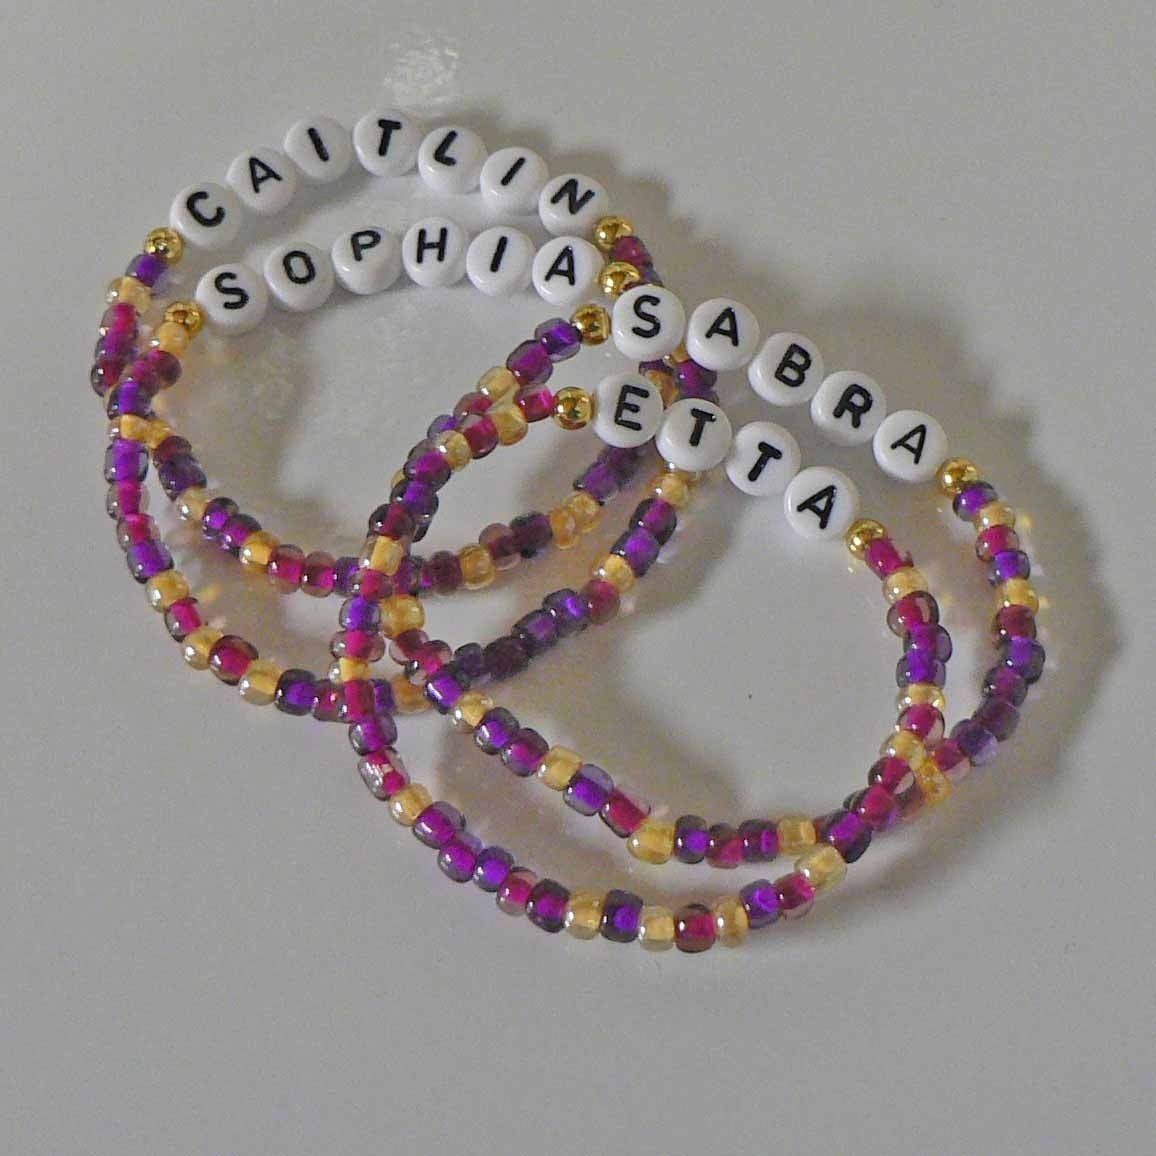 Personalized Children's Bracelets NAME/SPORT/NICKNAME